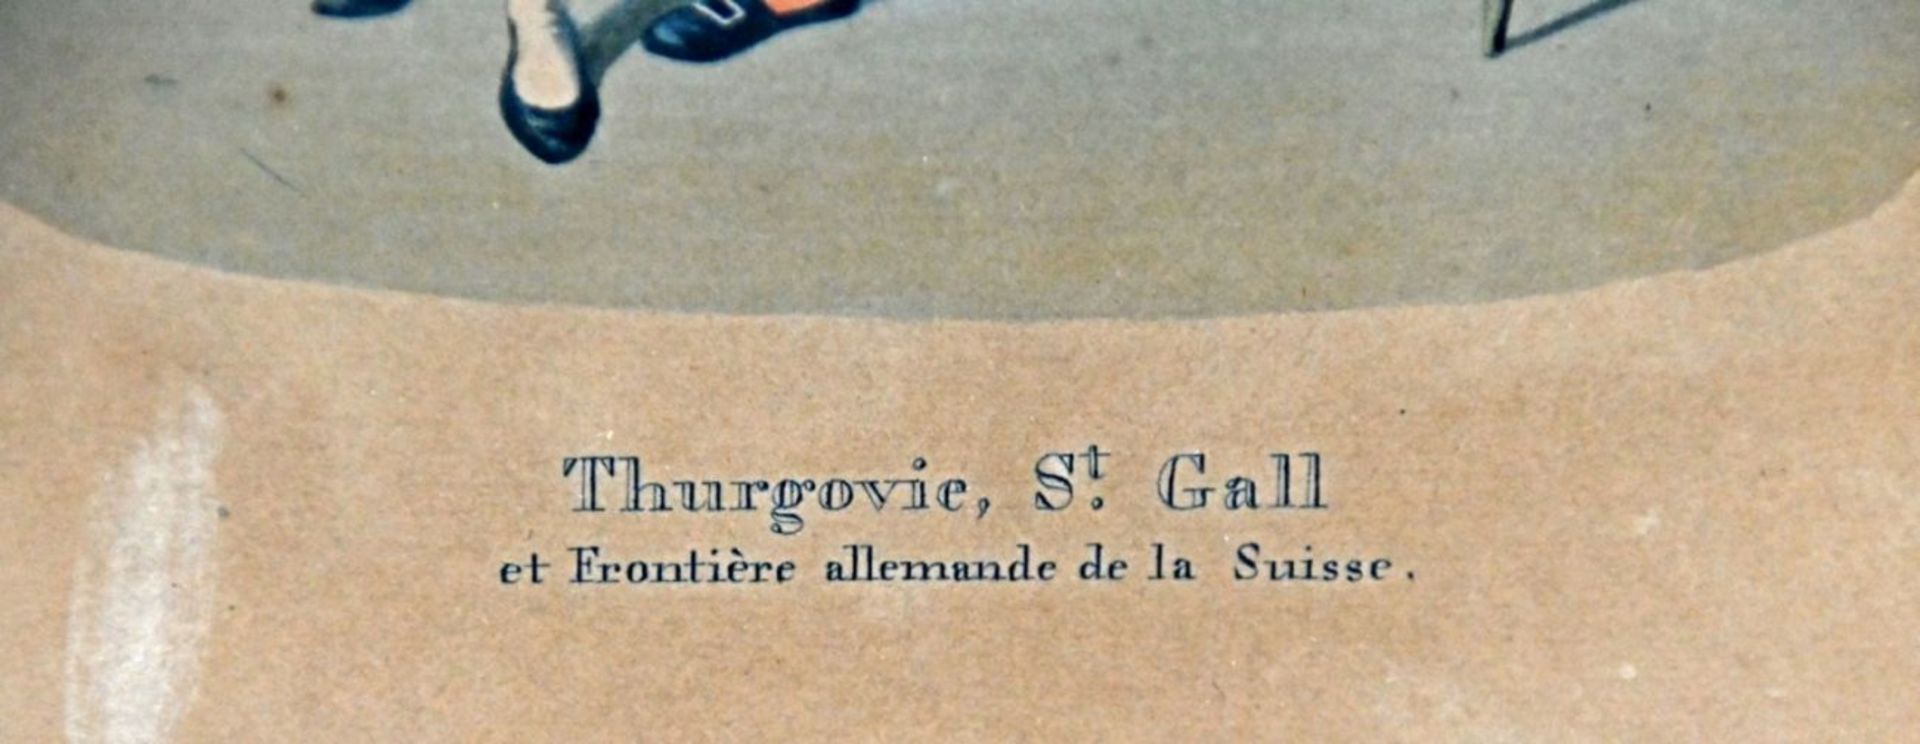 THURGAU (CH) Tracht, "Thurgovie, St. Gall et Frontière allemande de la Suisse" - Image 3 of 3